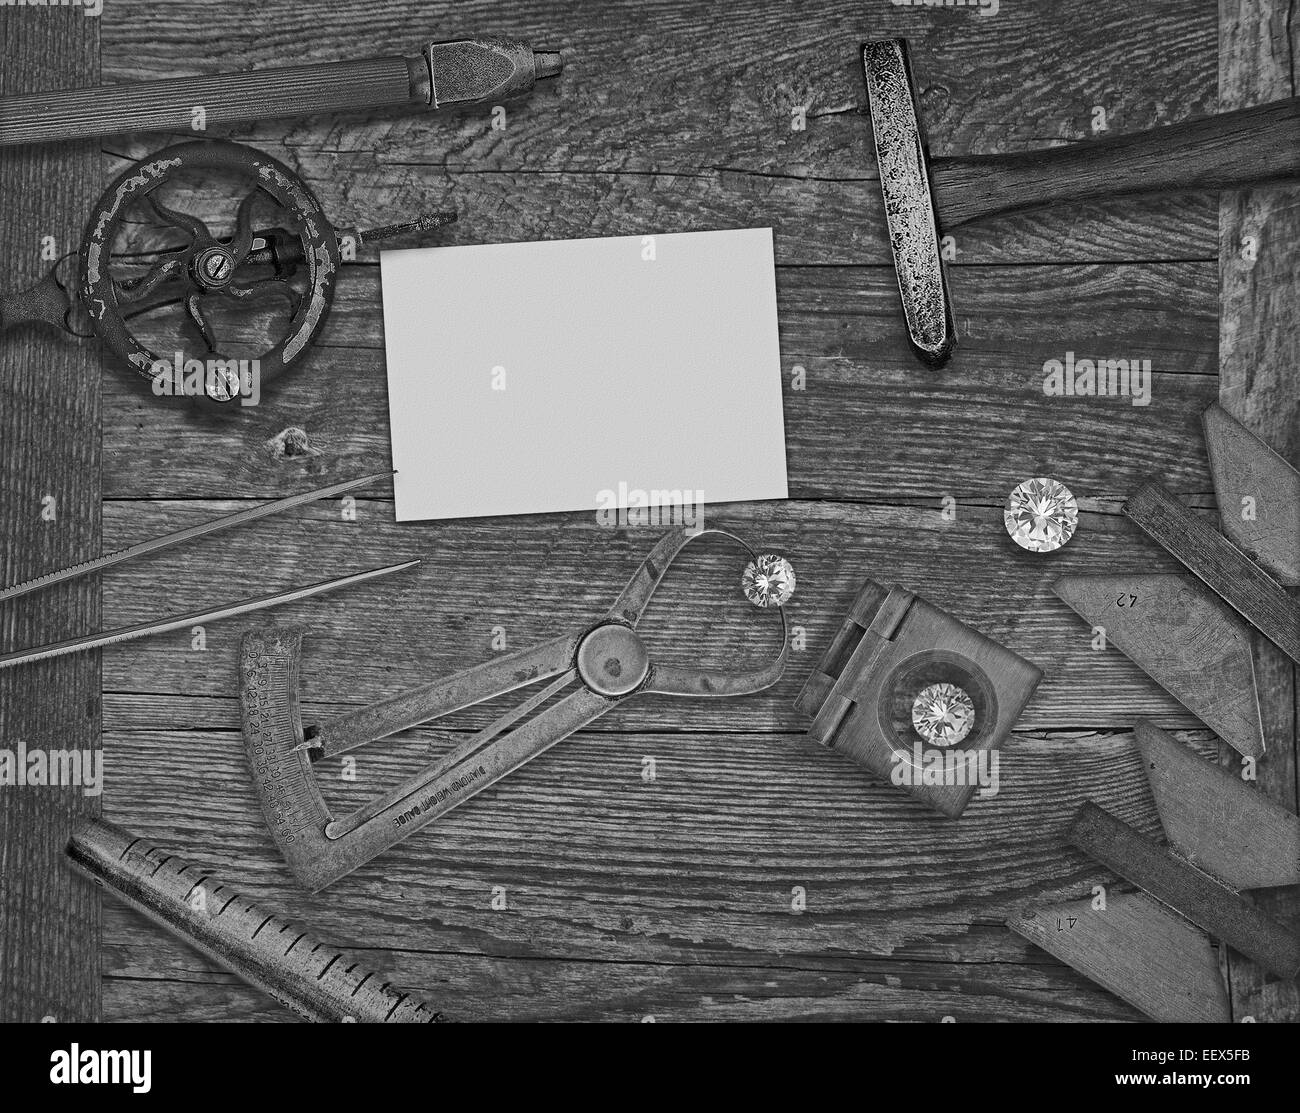 schwarz / weiß Bild einer Vintage Juwelier-Tools und Diamanten über Holzbank, Platz für Text auf eine leere Visitenkarte Stockfoto